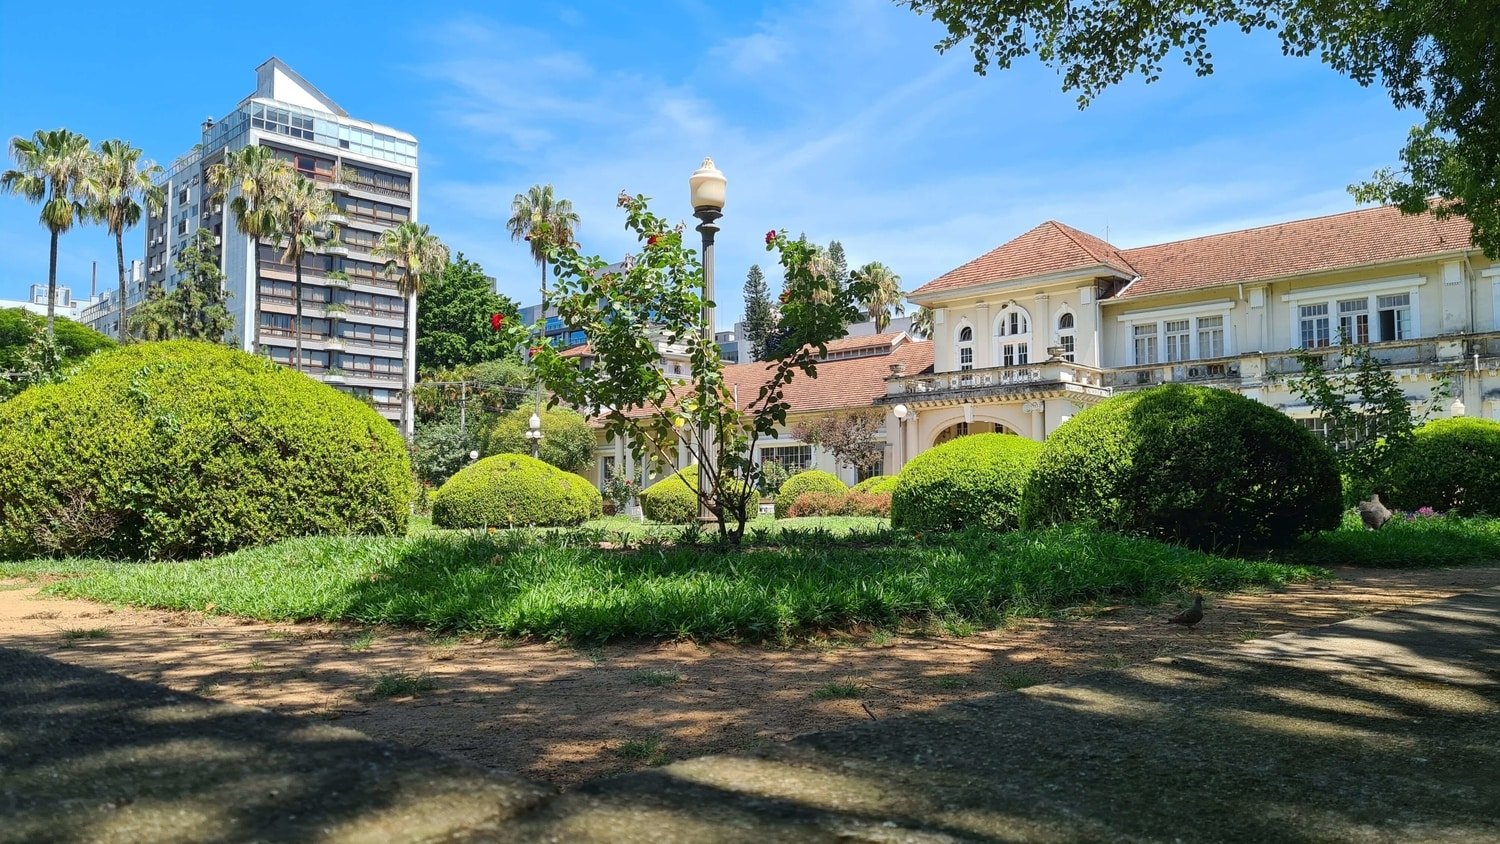 Parque Moinho dos Ventos, também conhecido como Parcão em Porto Alegre